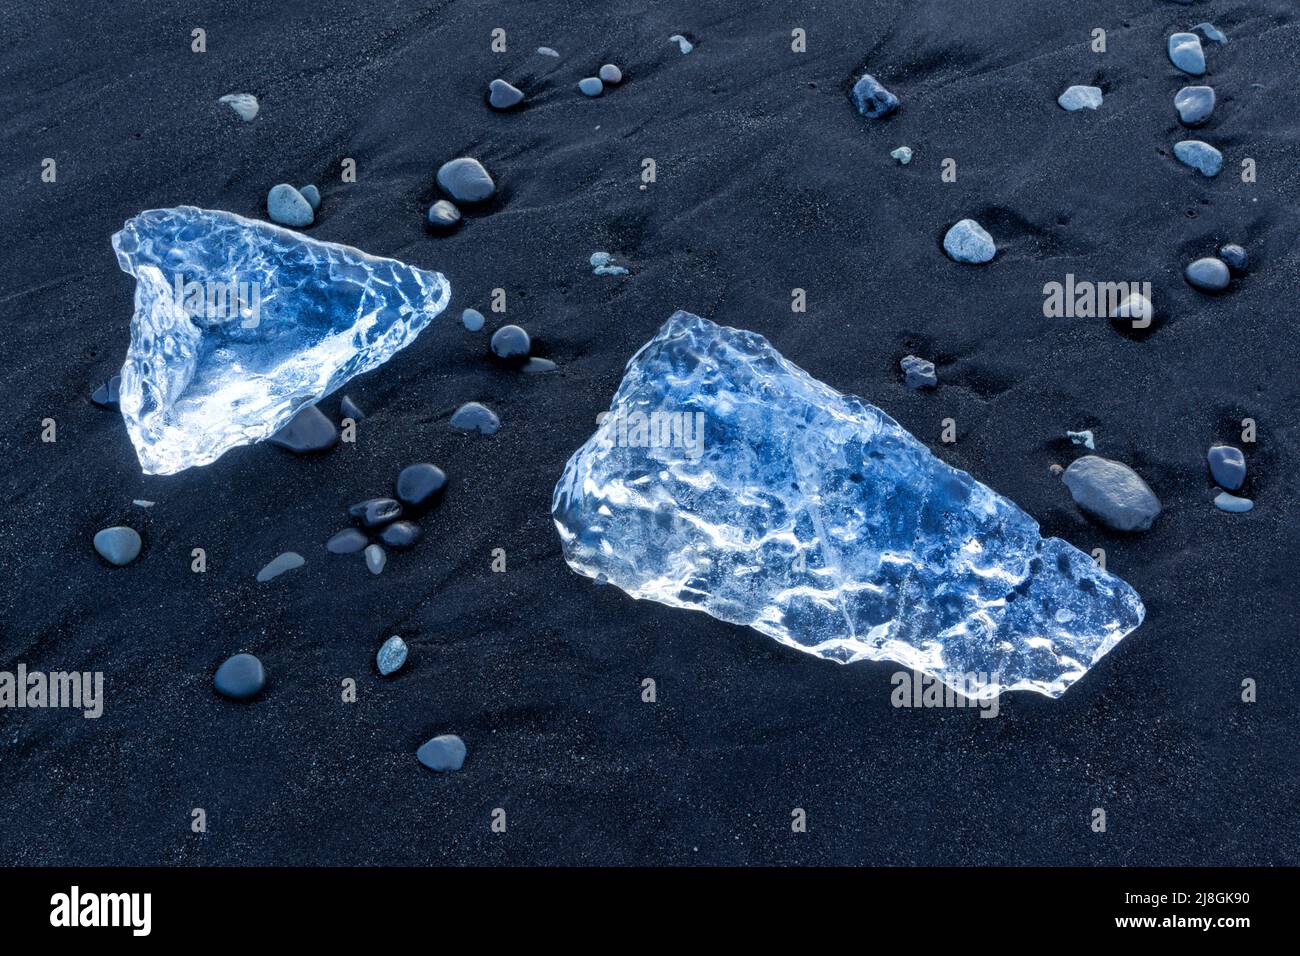 Des fragments d'iceberg se sont enlais sur la plage de Jökulsarlön, où des icebergs s'écoulent de la lagune de Jökulsarlön en Islande. Parfois appelée plage de diamants. Banque D'Images